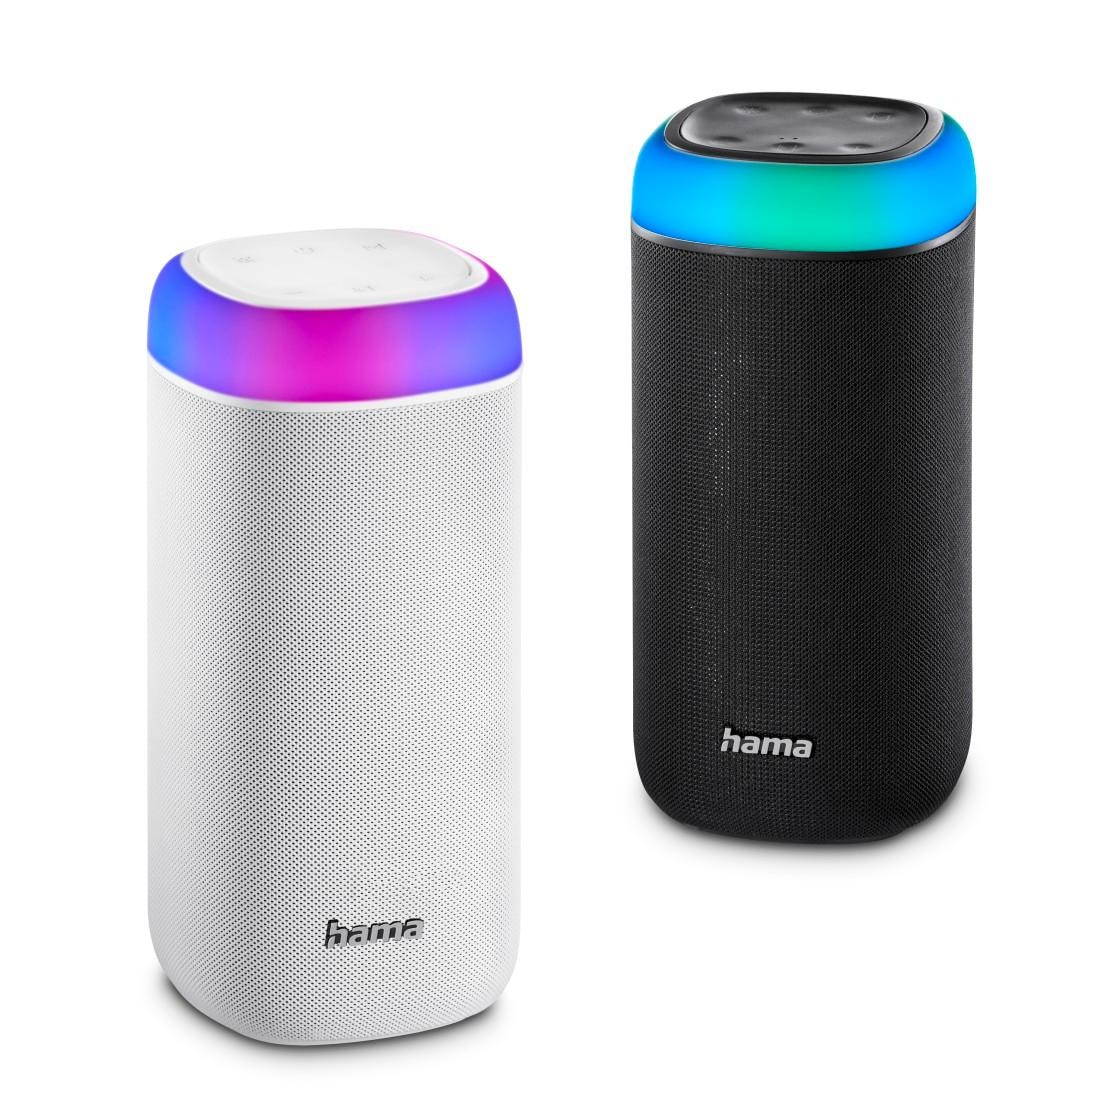 Hama Bluetooth-Lautsprecher »Bluetooth Box spritzwassergeschützt«, 360ᵒ kaufen 2.0 bei Xtra Shine jetzt Freisprechanlage-Xtra Bass-360ᵒ OTTO Sound LED Bass Sound